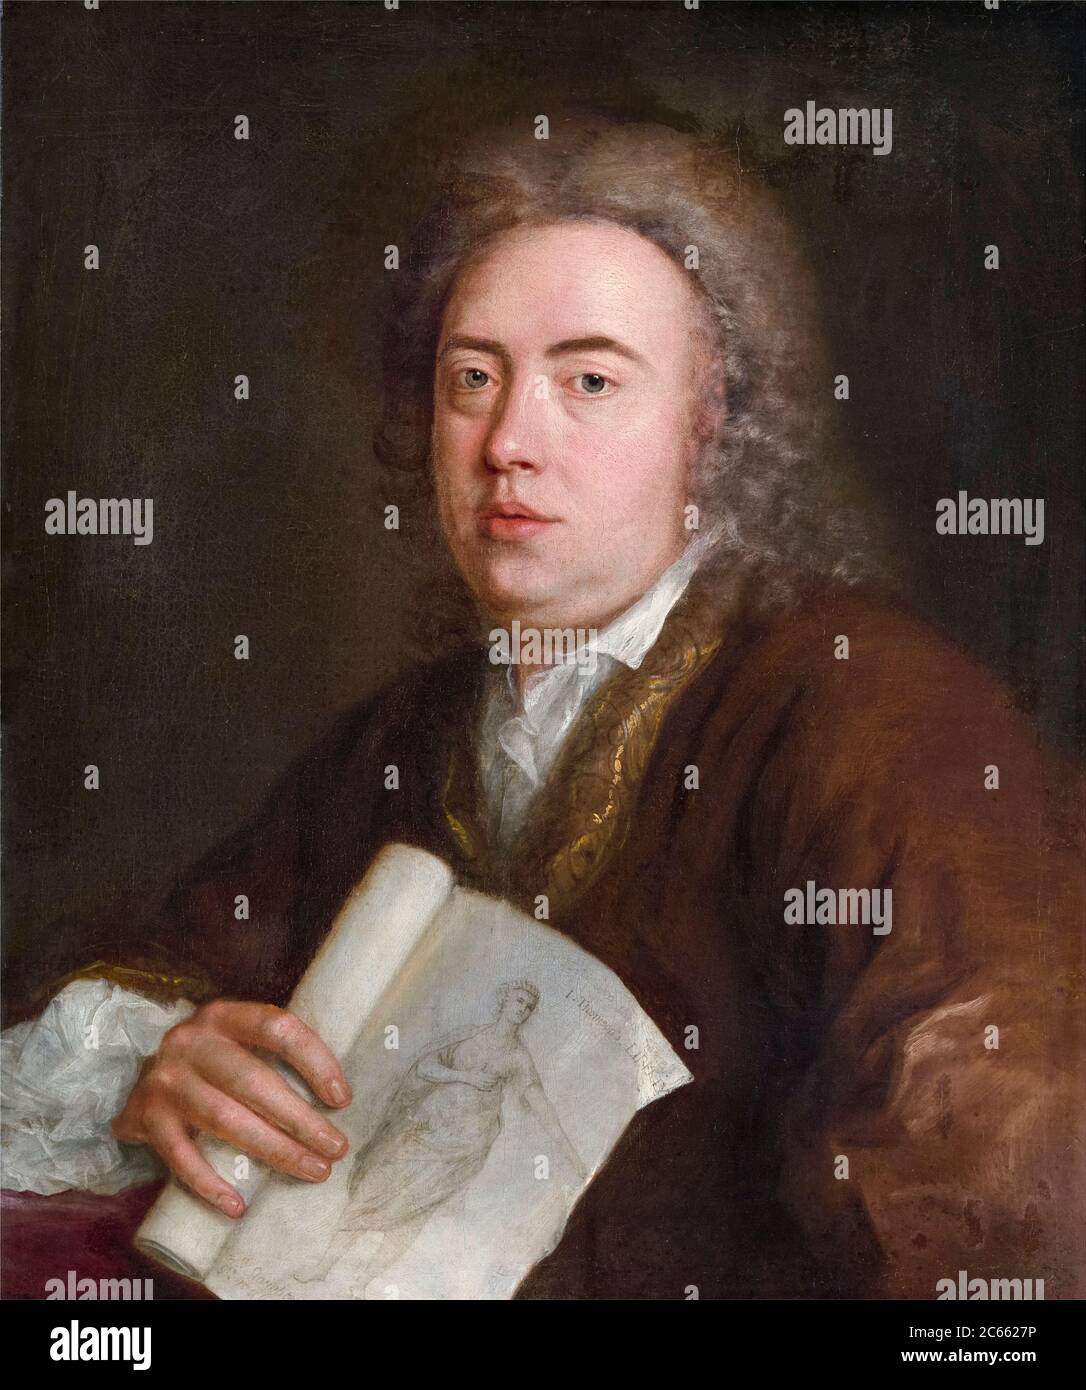 James Thomson (1700-1748), poète et dramaturge écossais, portrait peint par Stephen Slaughter, 1736 Banque D'Images